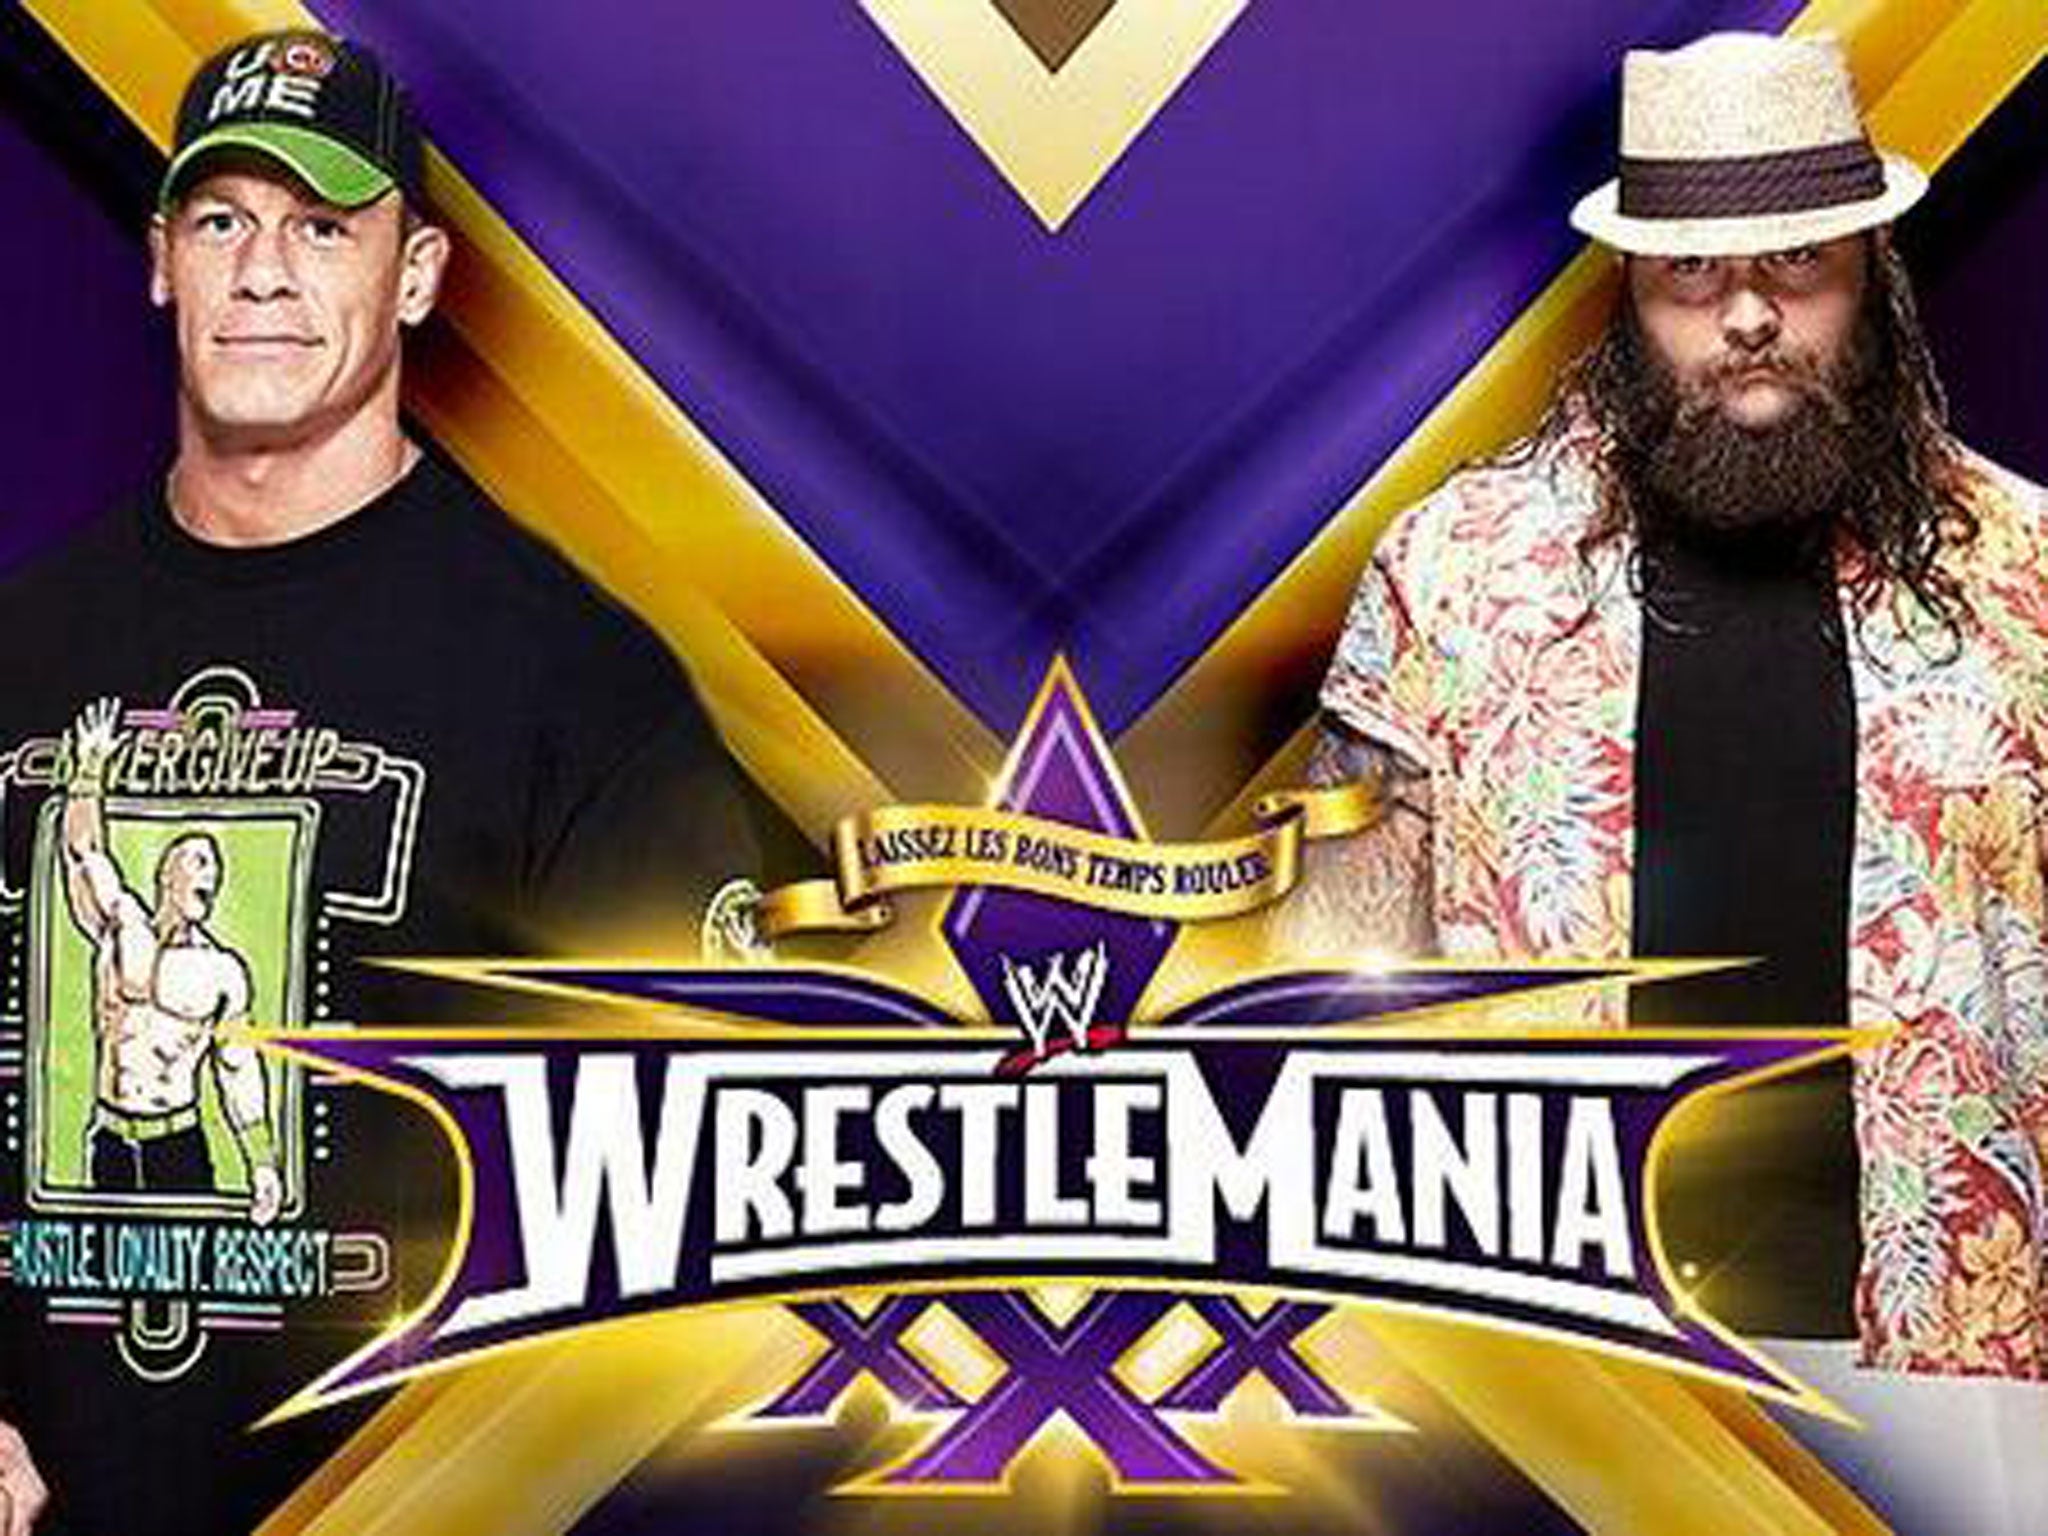 Bray Wyatt faces up against John Cena at WrestleMania